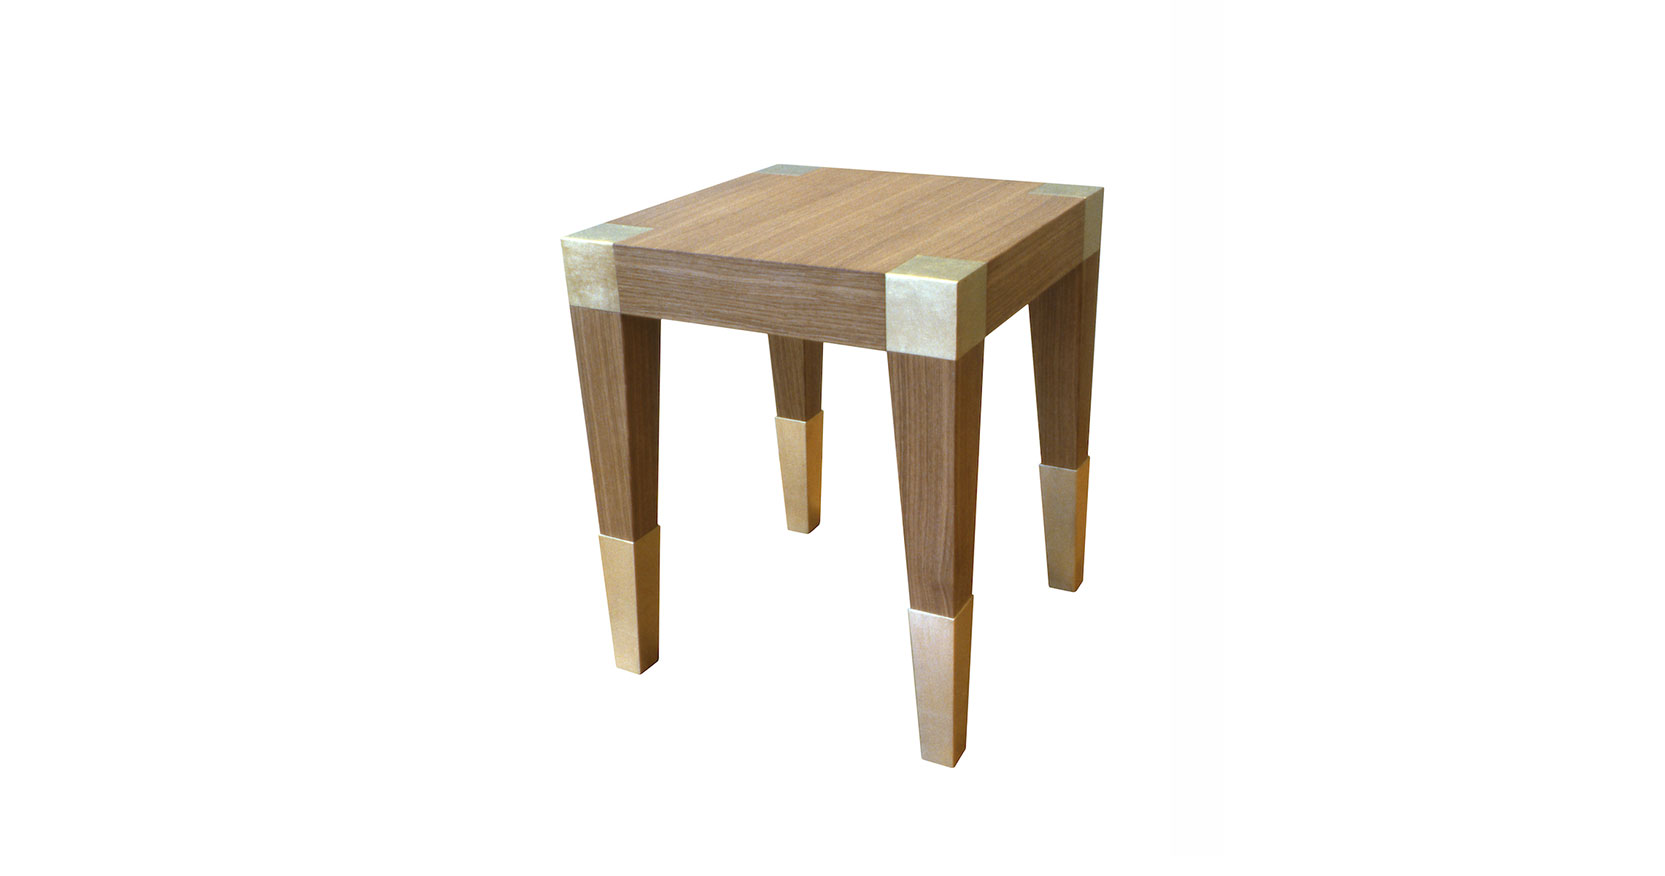 Garouste Bonetti, petite table carrée en bois clair, avec des plaques de métal doré carrées encastrées dans les angles et les pieds